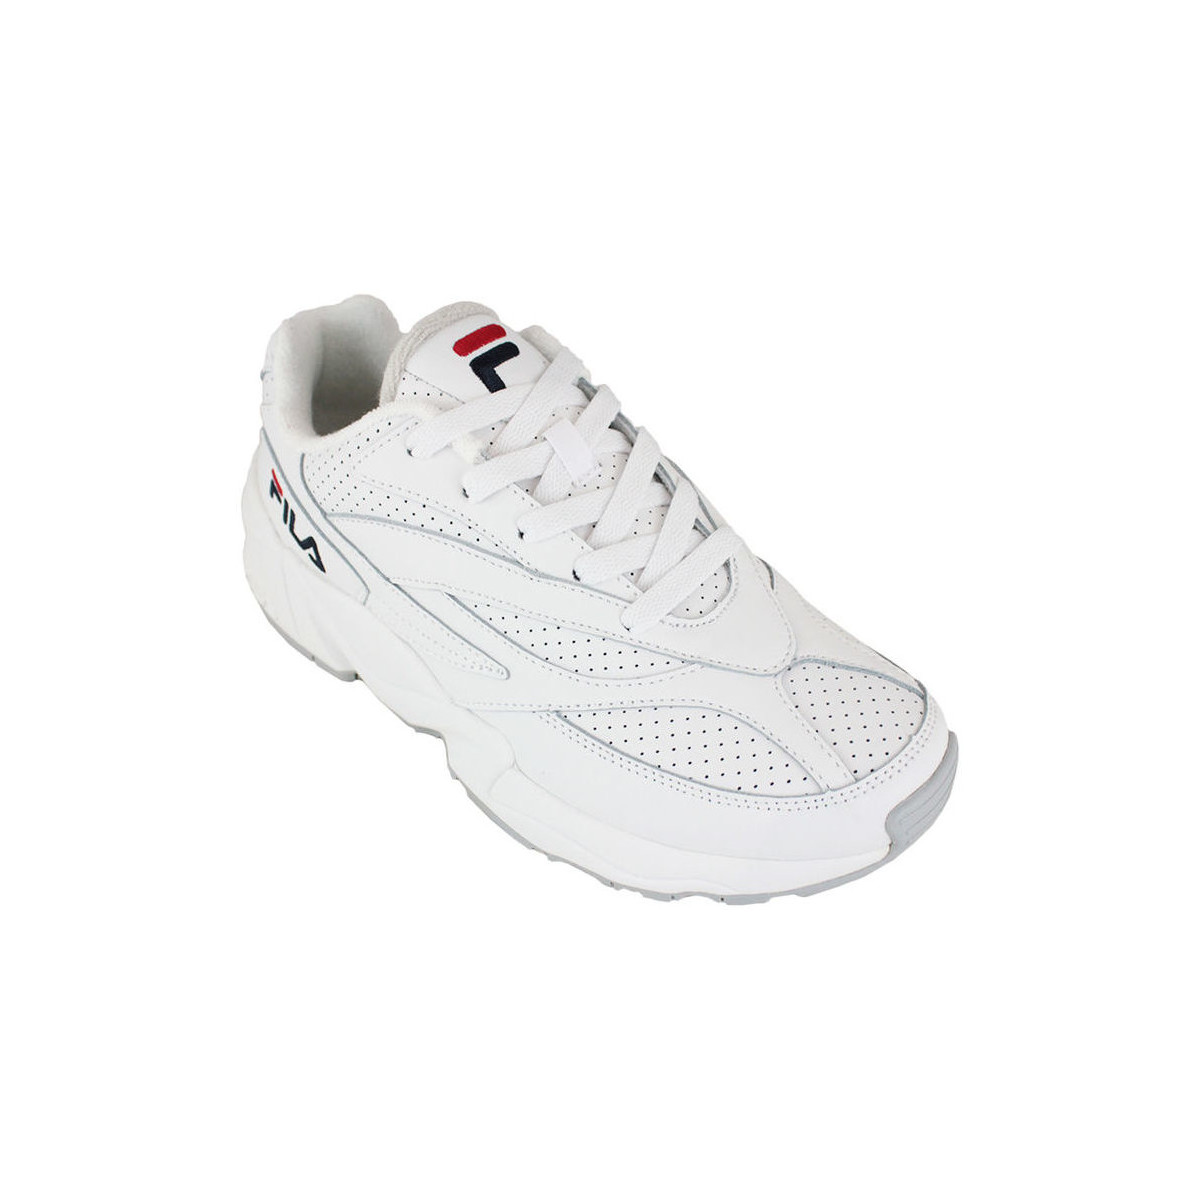 Sko Herre Sneakers Fila v94 l low white Hvid